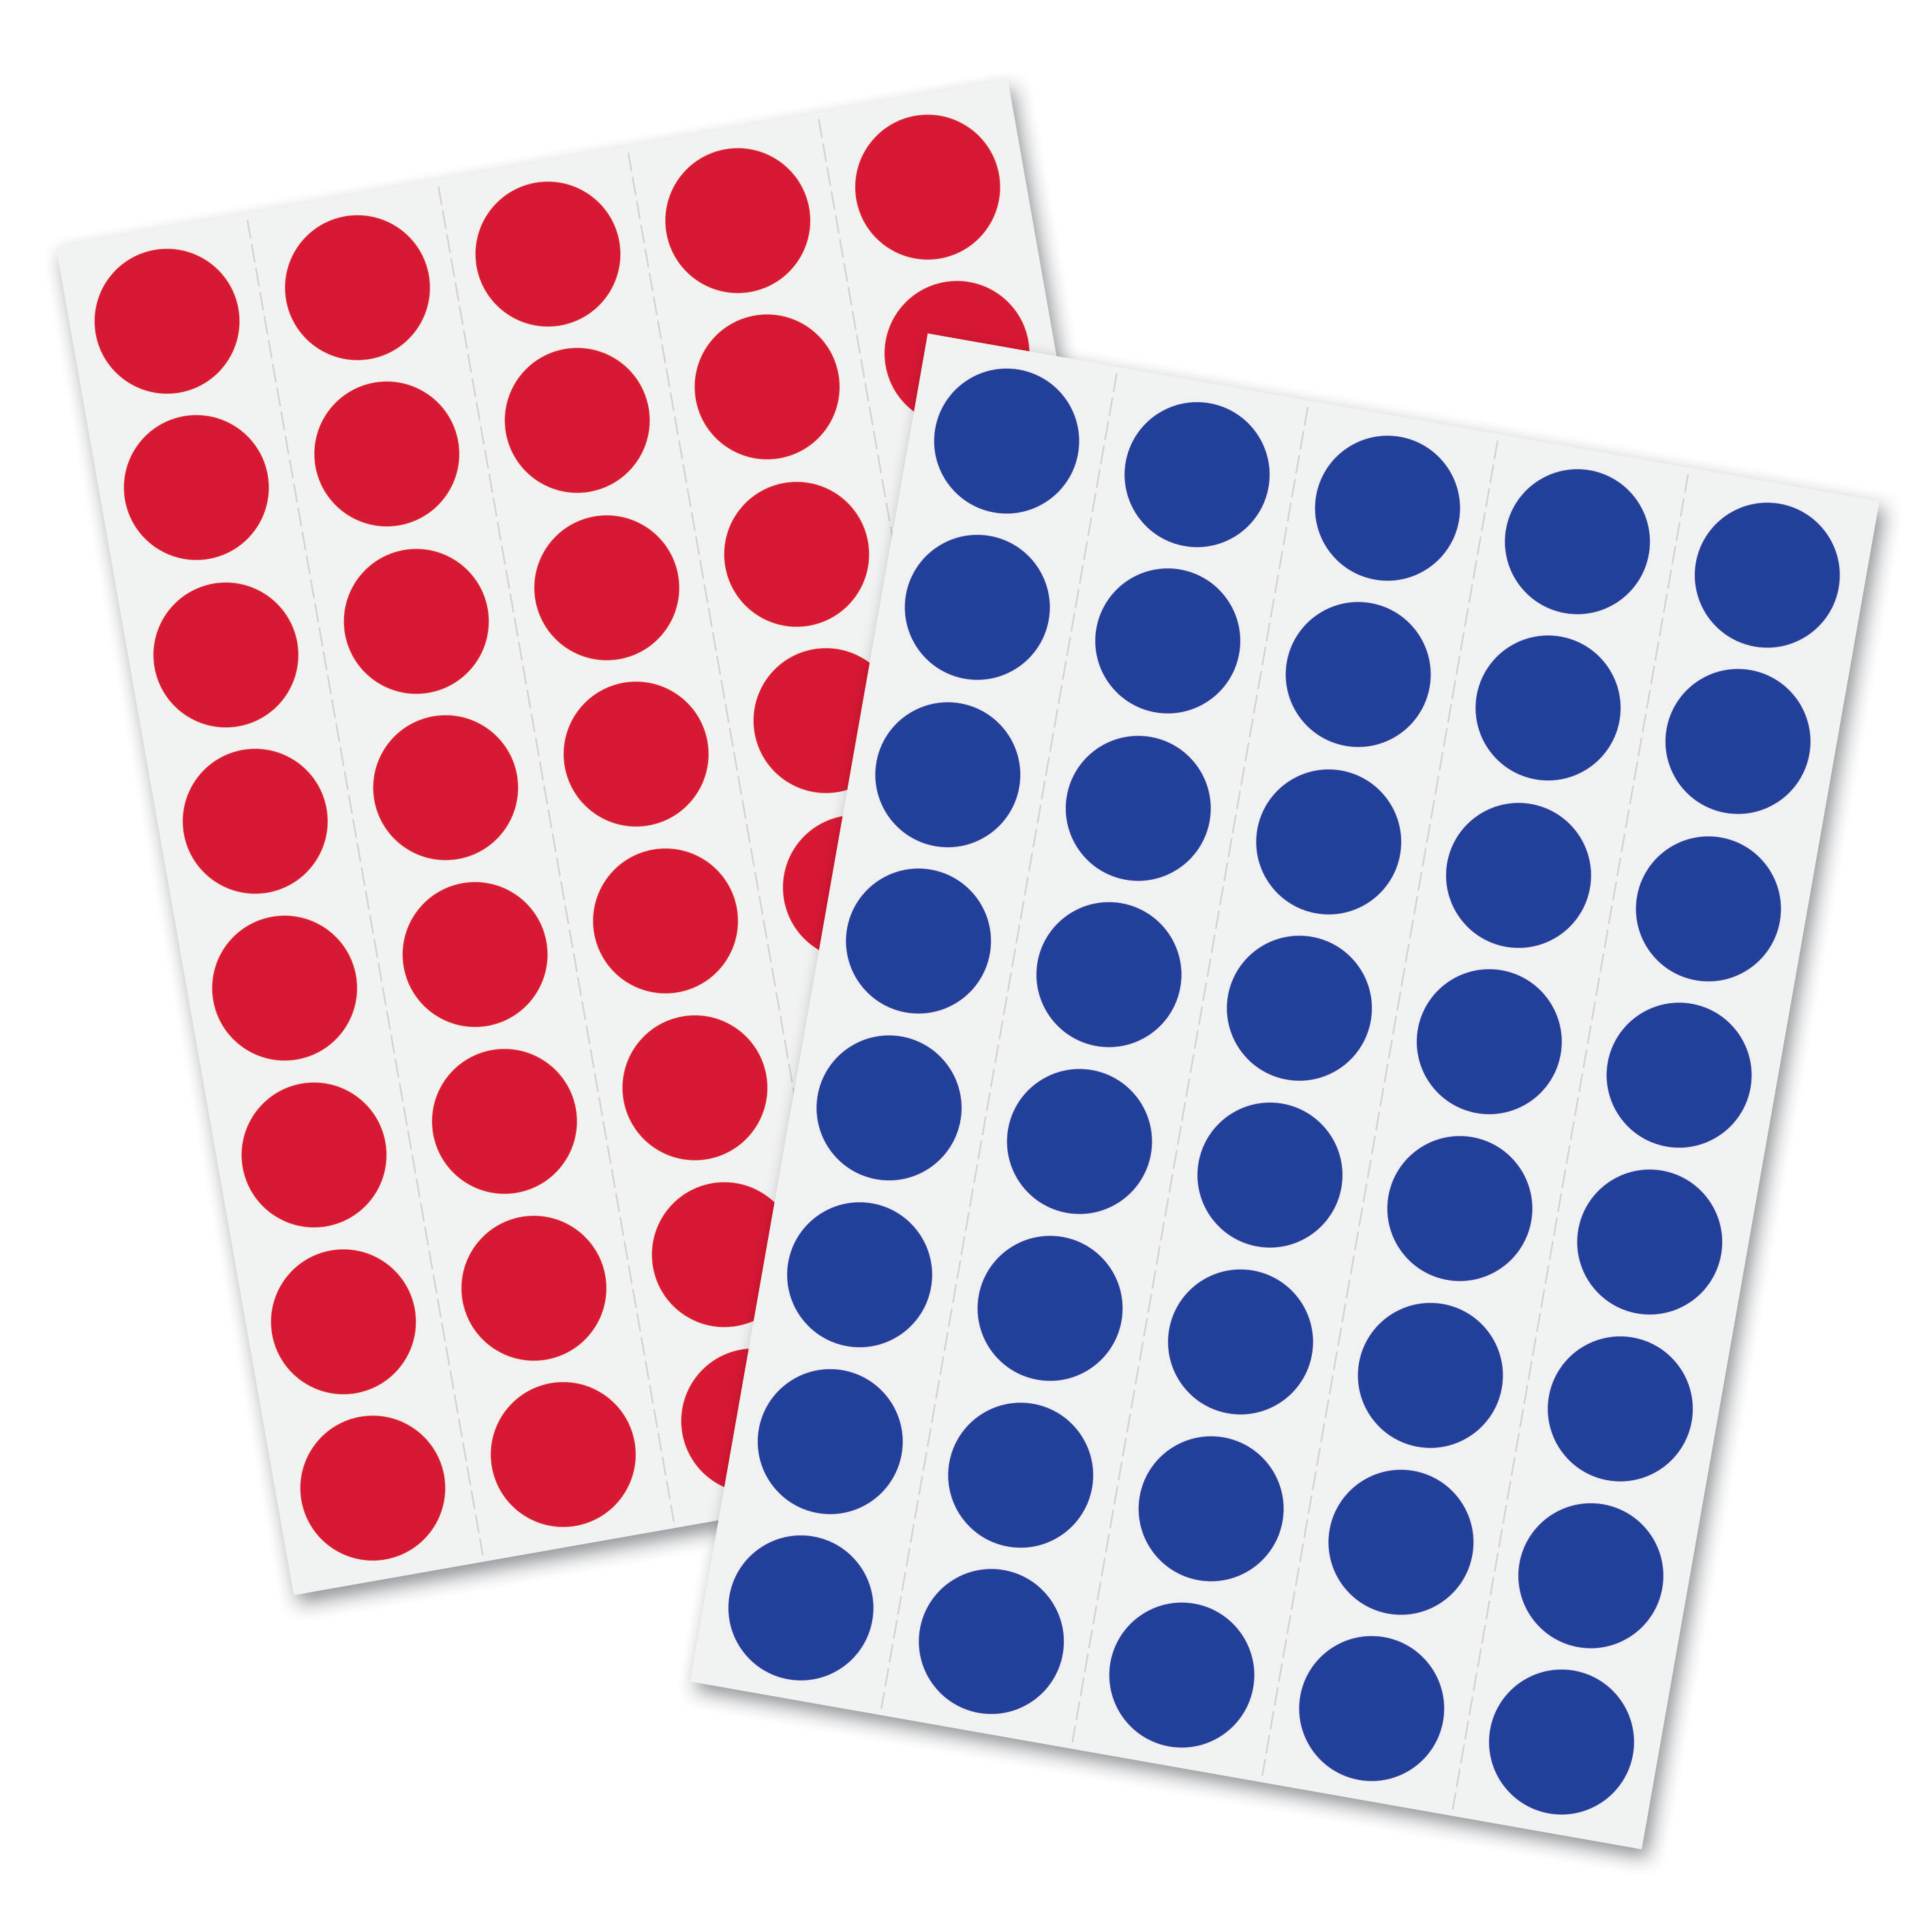 Toolkit für agiles Pinboard Meet up: von Moderationskarten bis zu Nadelkissen - 3